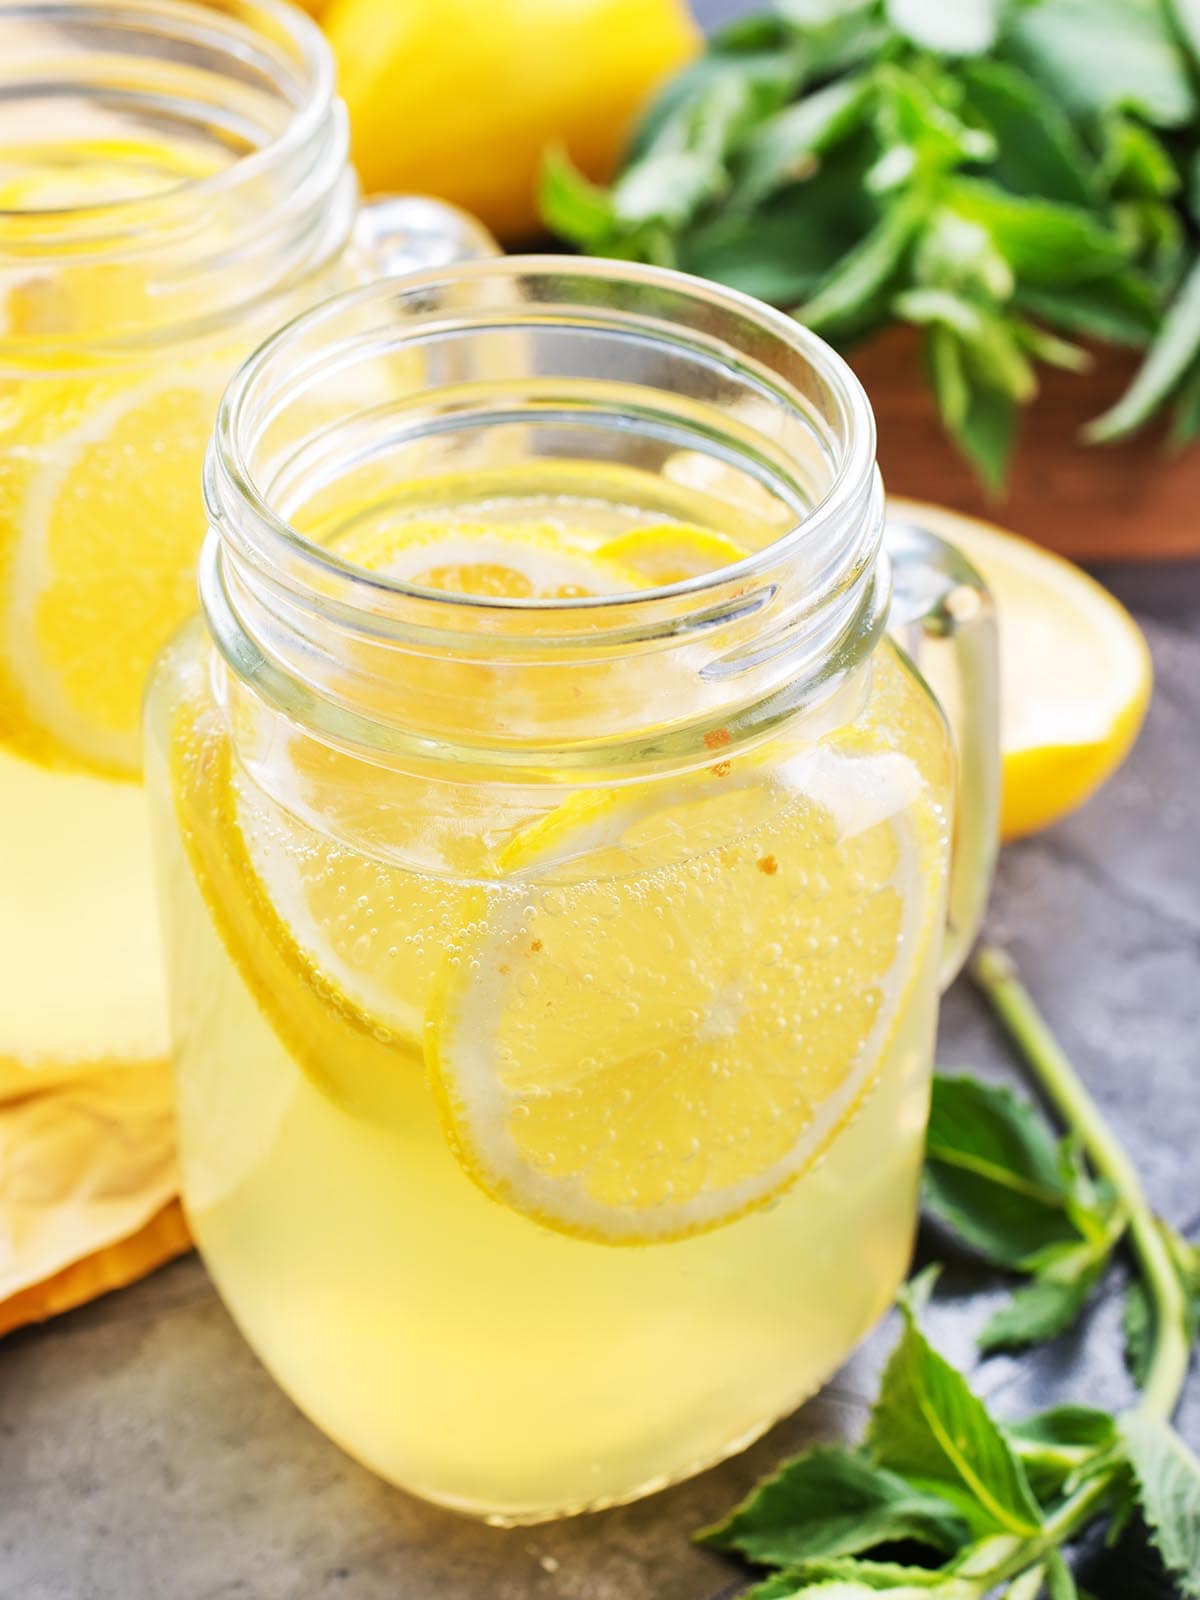 Glass of lemonade with slice of lemons.